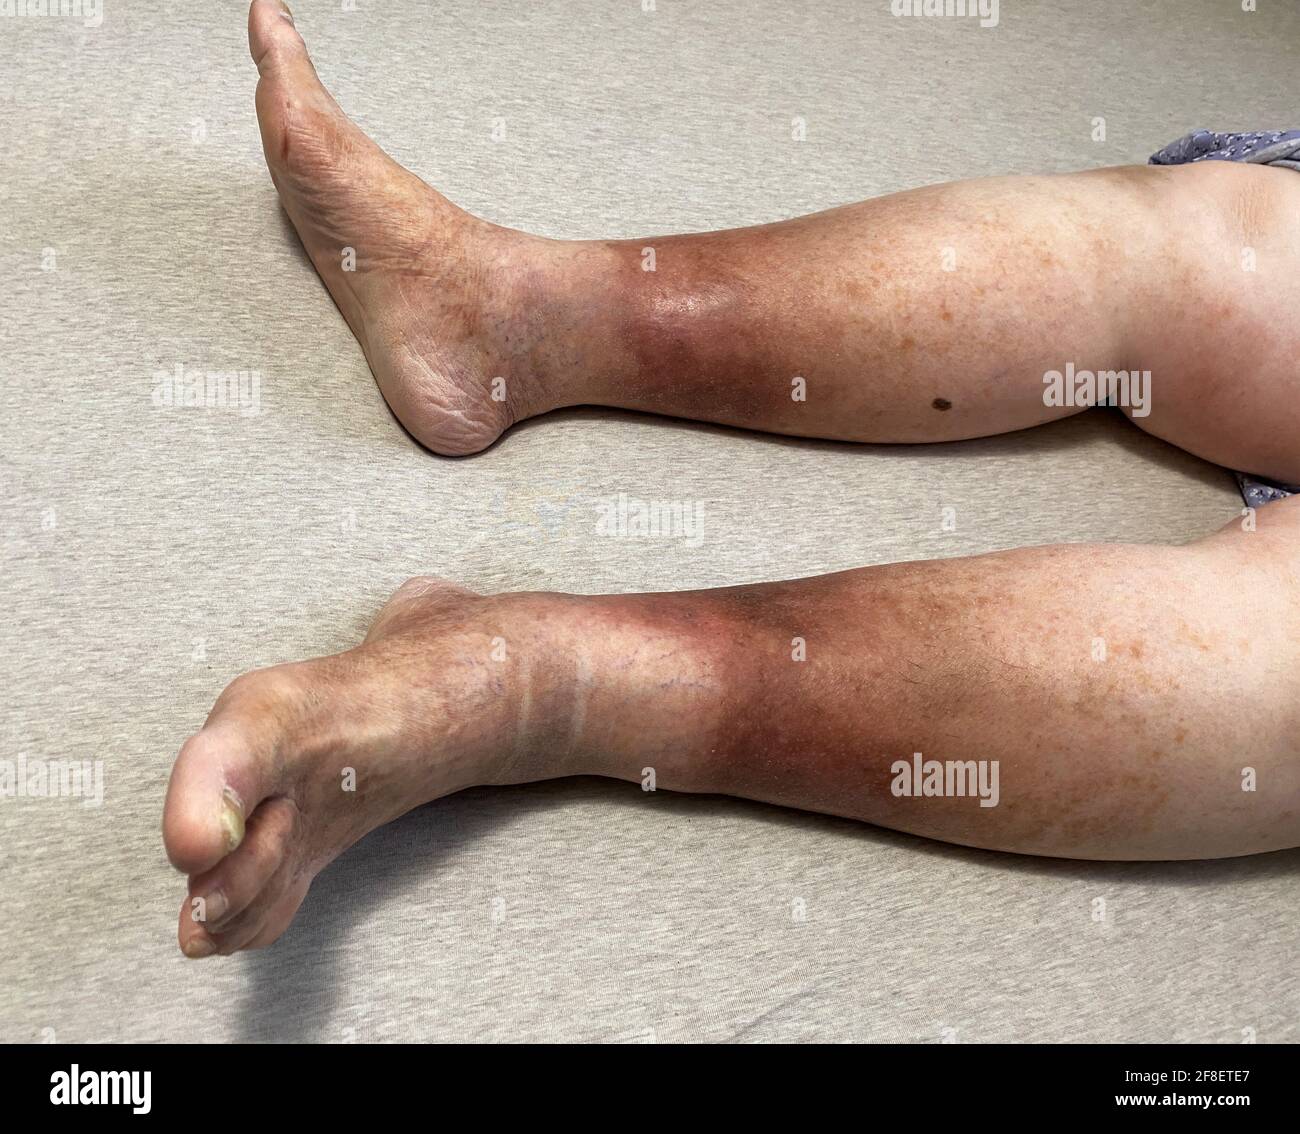 Las piernas de una mujer se muestran, ella está sufriendo de insuficiencia venosa crónica con celulitis leve en sus piernas. En cama mientras descansa para aliviar la pesadez Foto de stock